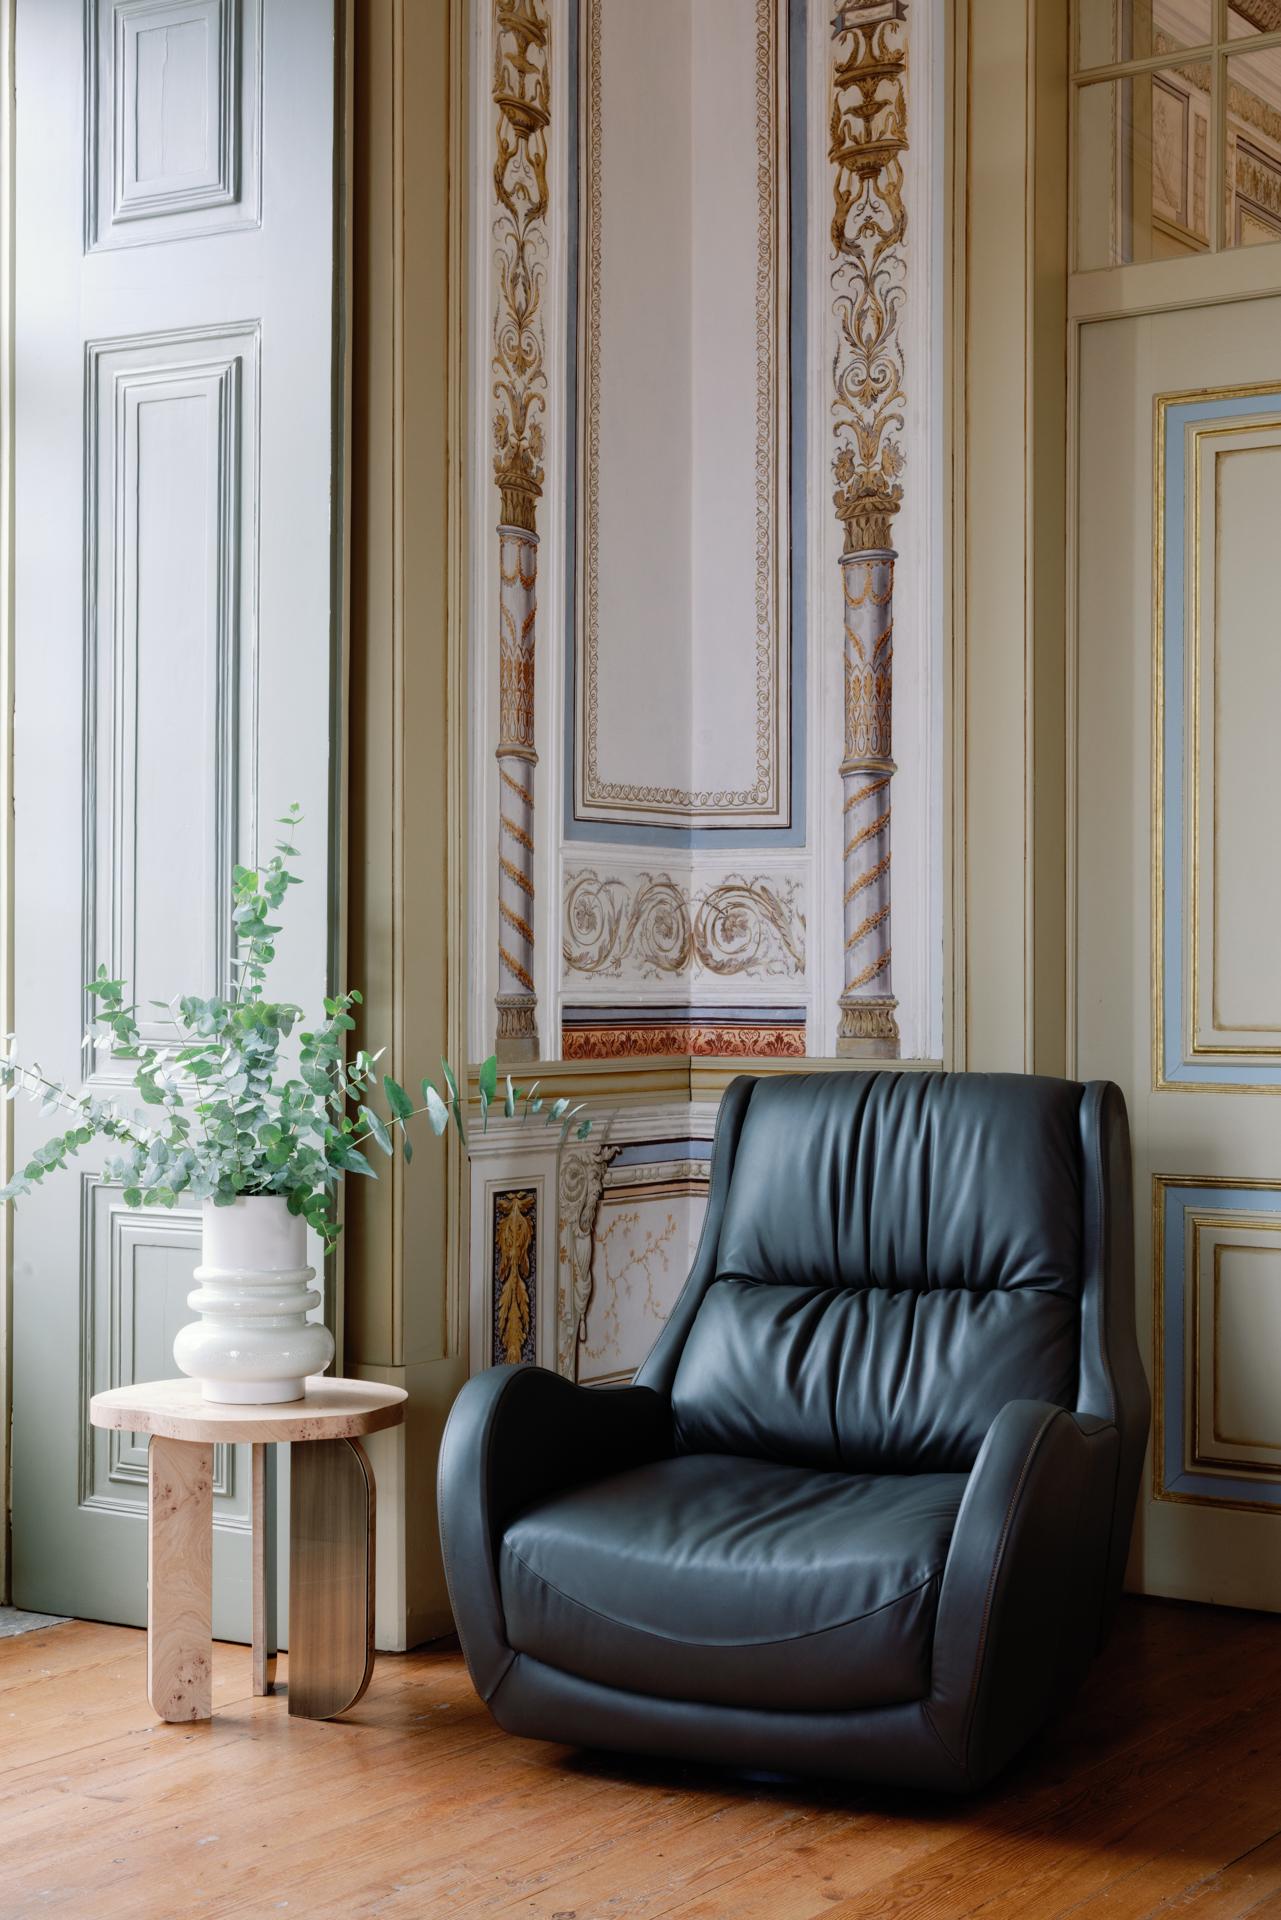 Chaise longue pivotante Capelinhos avec repose-pieds, Collection Contemporary, Fabriqué à la main au Portugal - Europe par Greenapple.

La chaise longue en cuir Capelinhos témoigne d'un confort intemporel. Comme un bon vin, Capelinhos vieillit